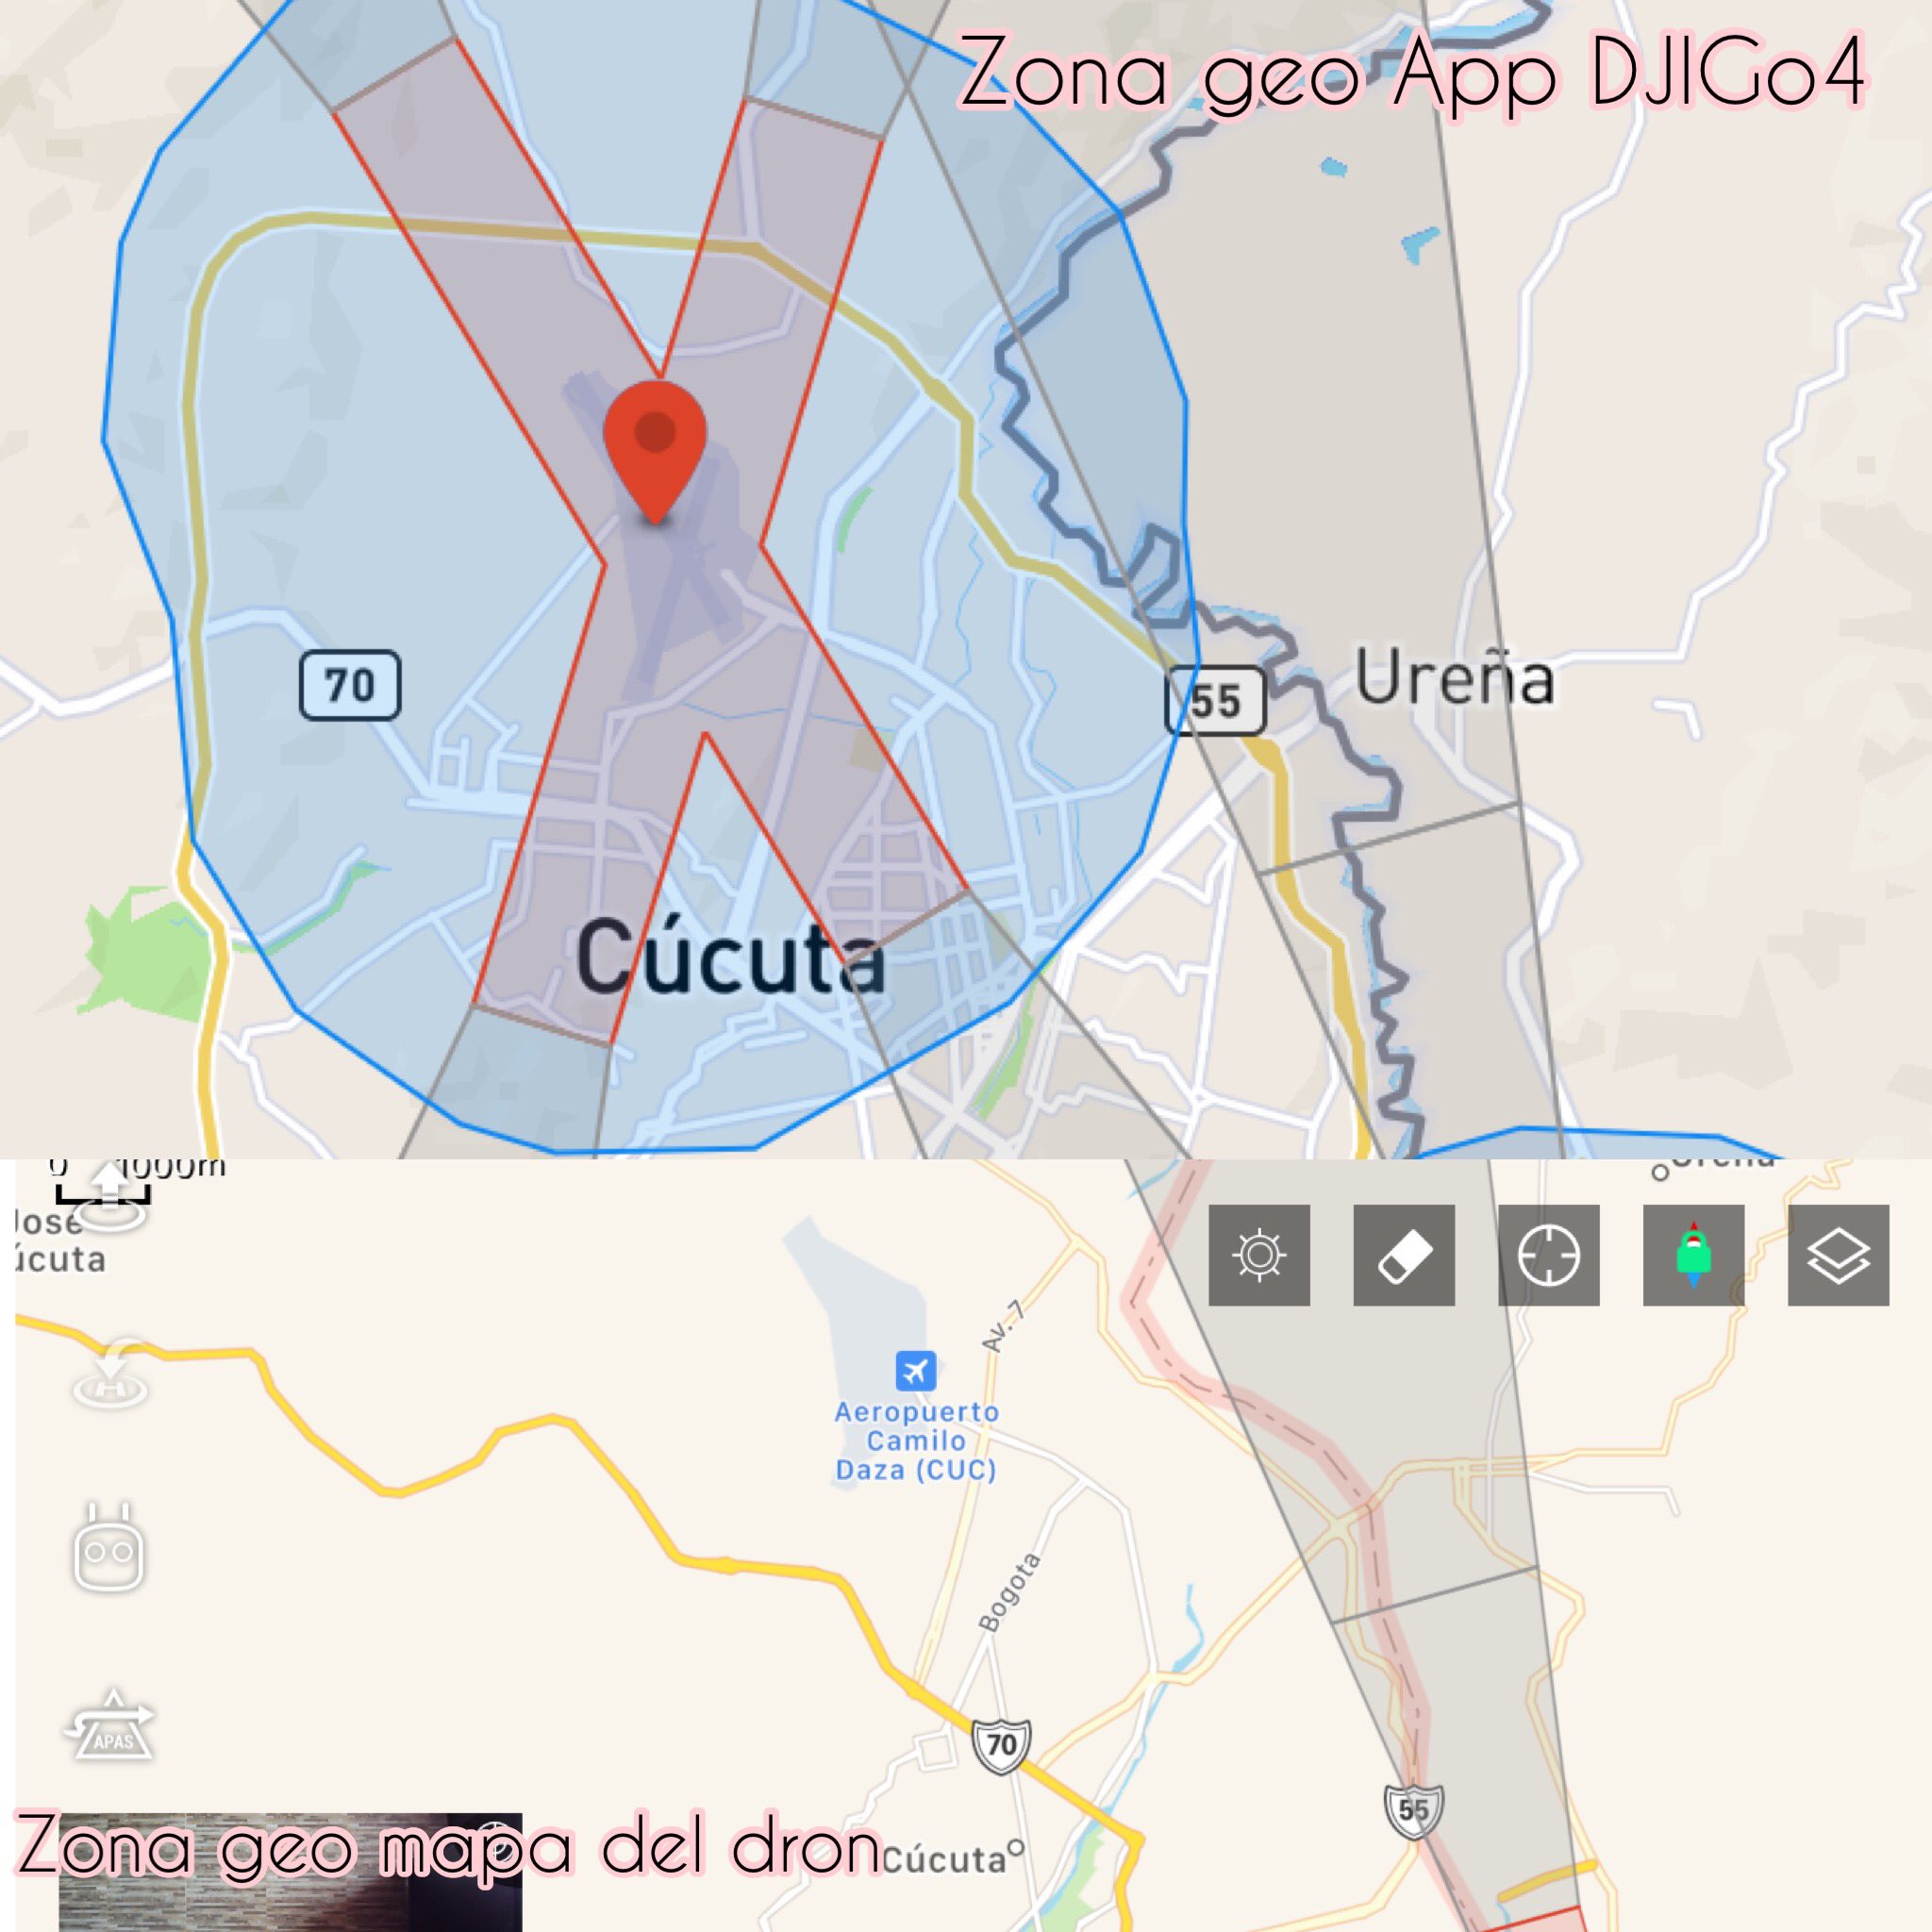 🚁Piloto de Drone on Twitter: "Después de la última actualización de #DJI Para sus drones Zonas Geo No coinciden si uno a App Zona Geo Cúcuta sale varios